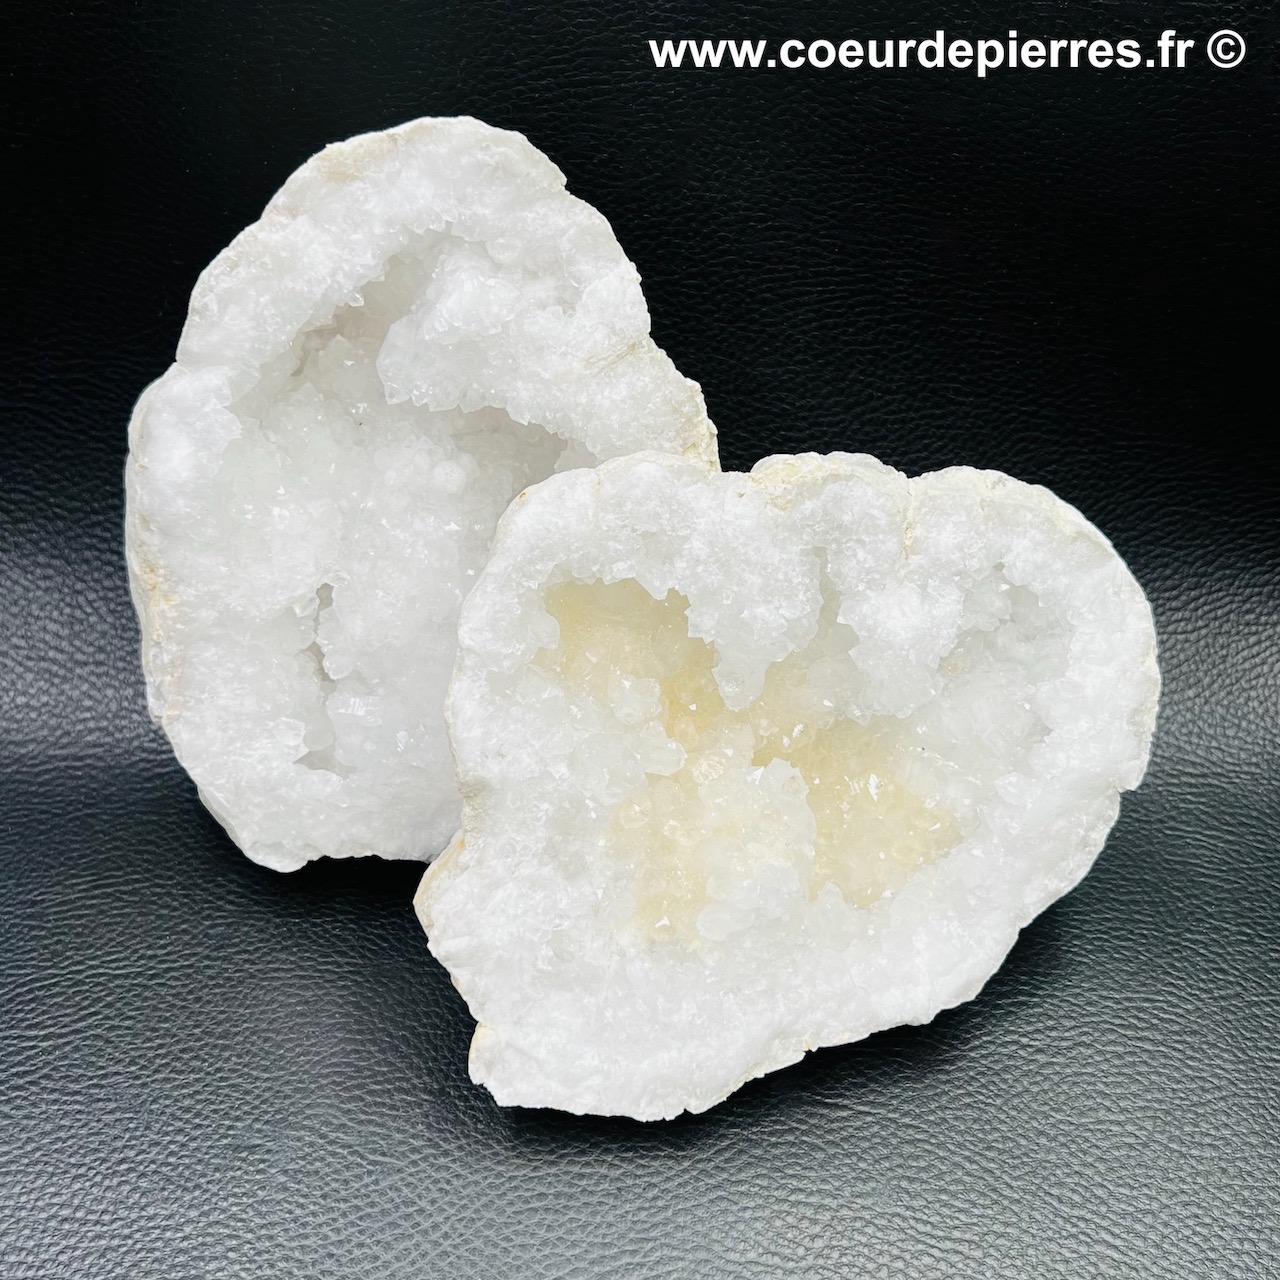 Géode de cristal de roche du Maroc de 1,800kg (réf gcr4)